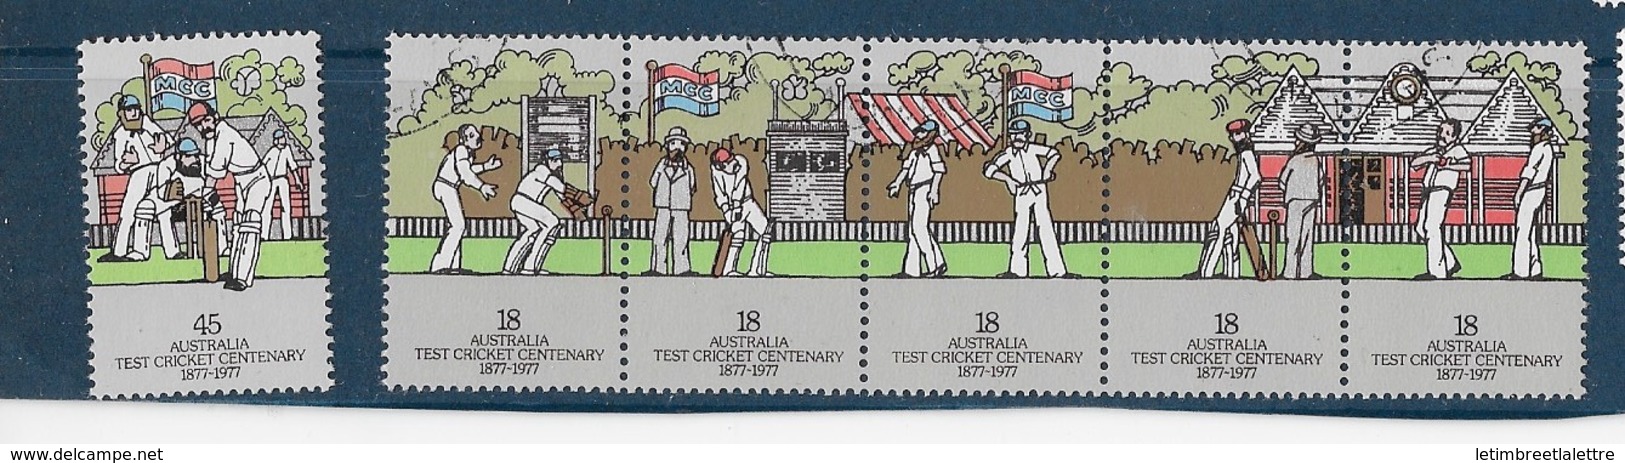 AUSTRALIE N°614 à 619** - Mint Stamps